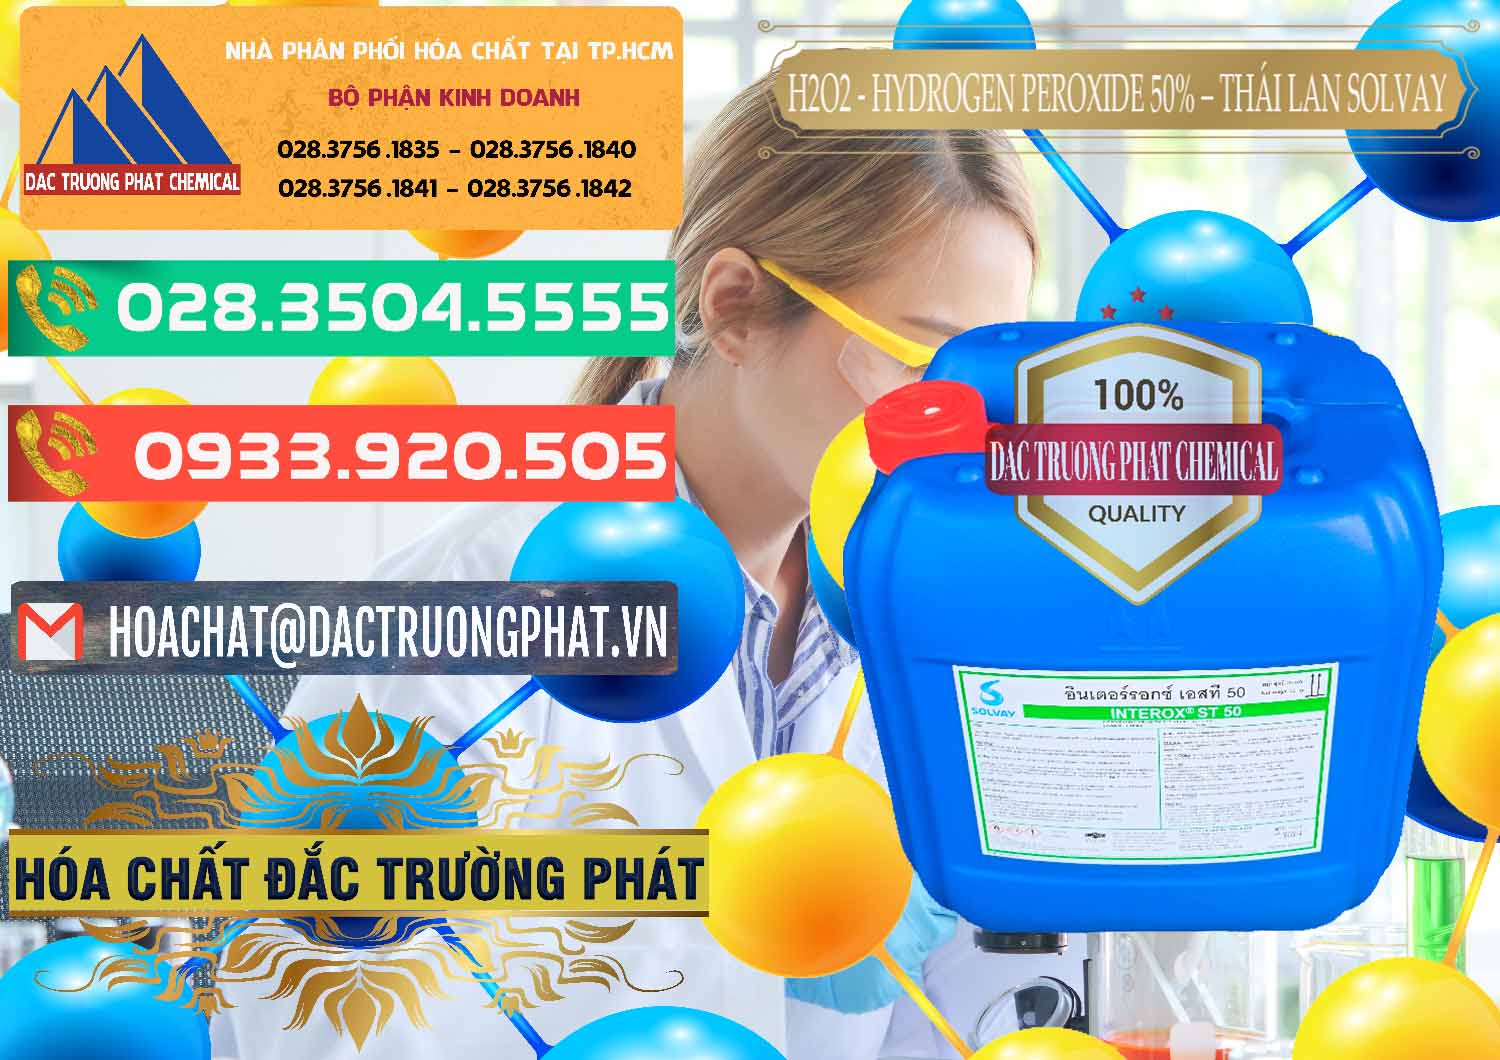 Nơi nhập khẩu _ bán H2O2 - Hydrogen Peroxide 50% Thái Lan Solvay - 0068 - Nơi nhập khẩu _ cung cấp hóa chất tại TP.HCM - congtyhoachat.com.vn